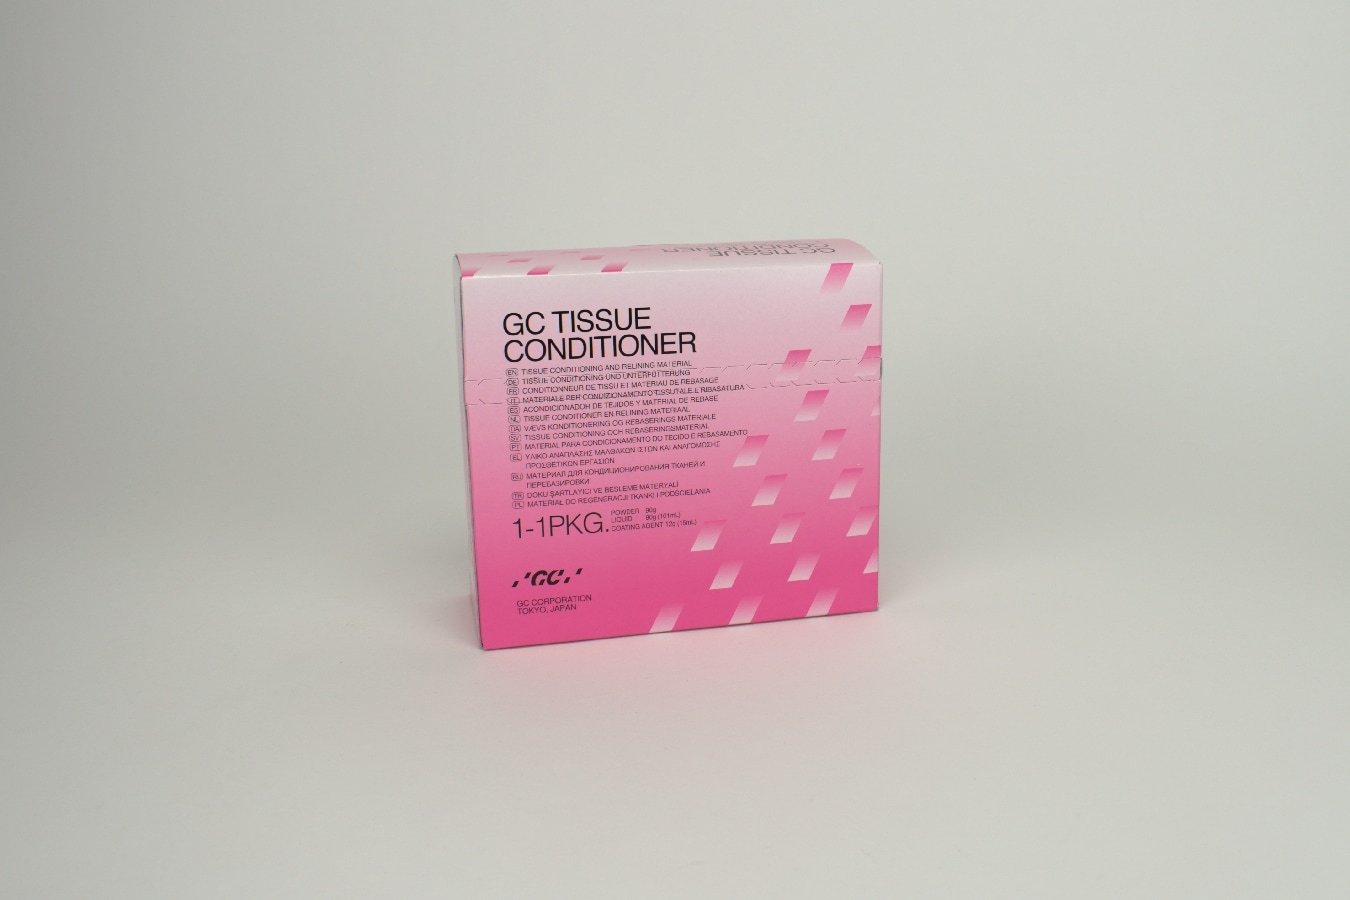 GC Tissue Conditioner Live Pink Intro